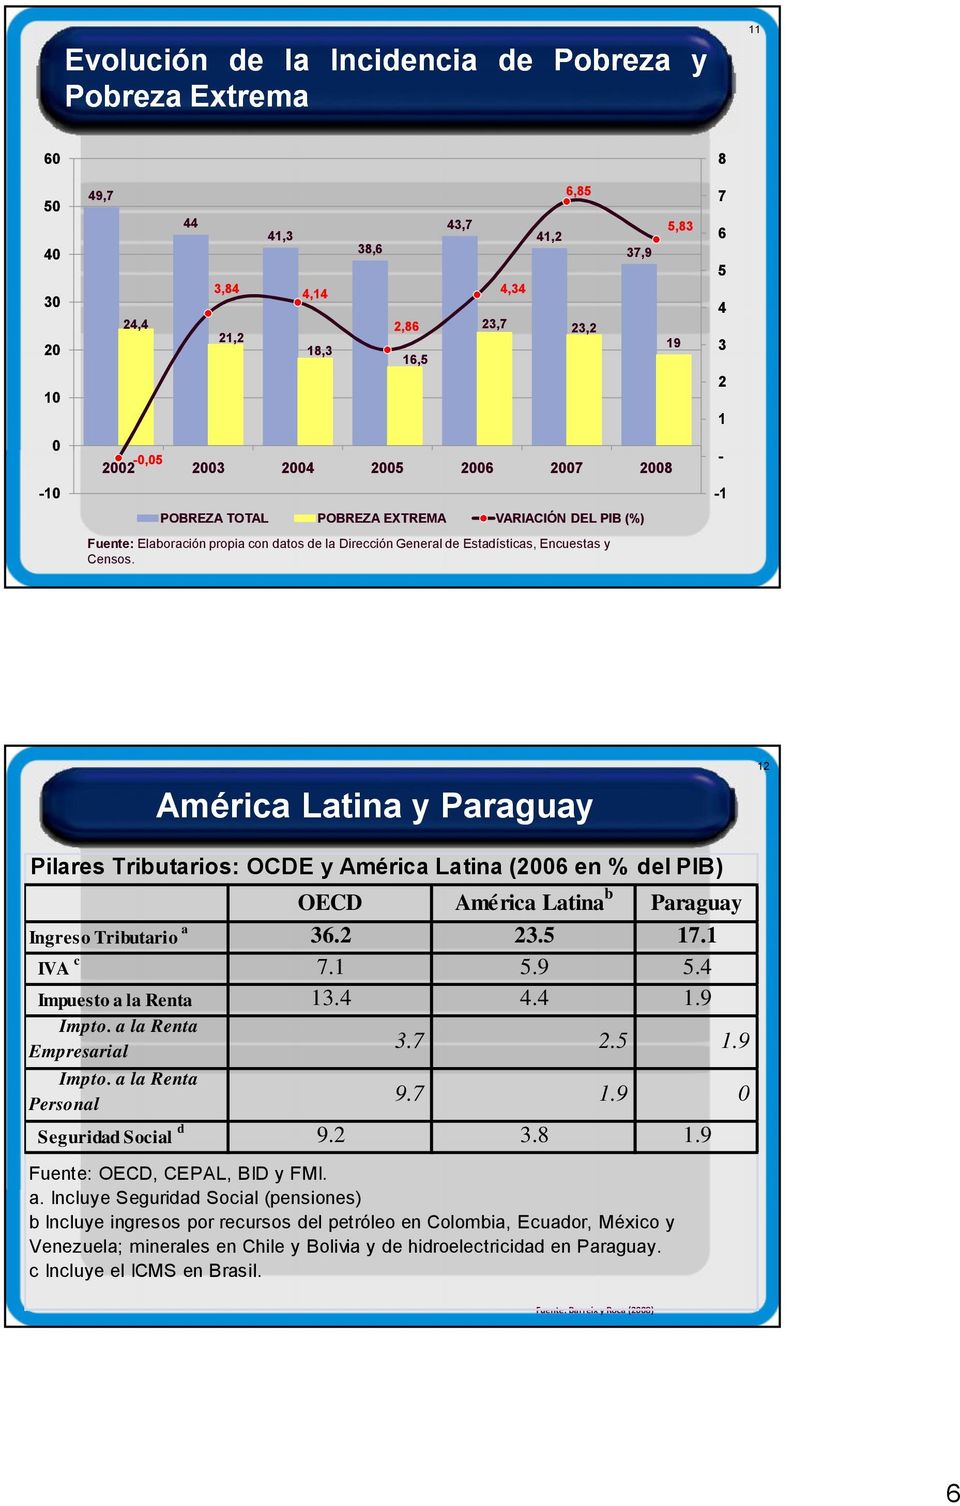 37,9-0,05 2002 2003 2004 2005 2006 2007 2008 POBREZA TOTAL POBREZA EXTREMA VARIACIÓN DEL PIB (%) 5,83 19 8 7 6 5 4 3 2 1 - -1 América Latina y Paraguay 12 Pilares Tributarios: OCDE y América Latina